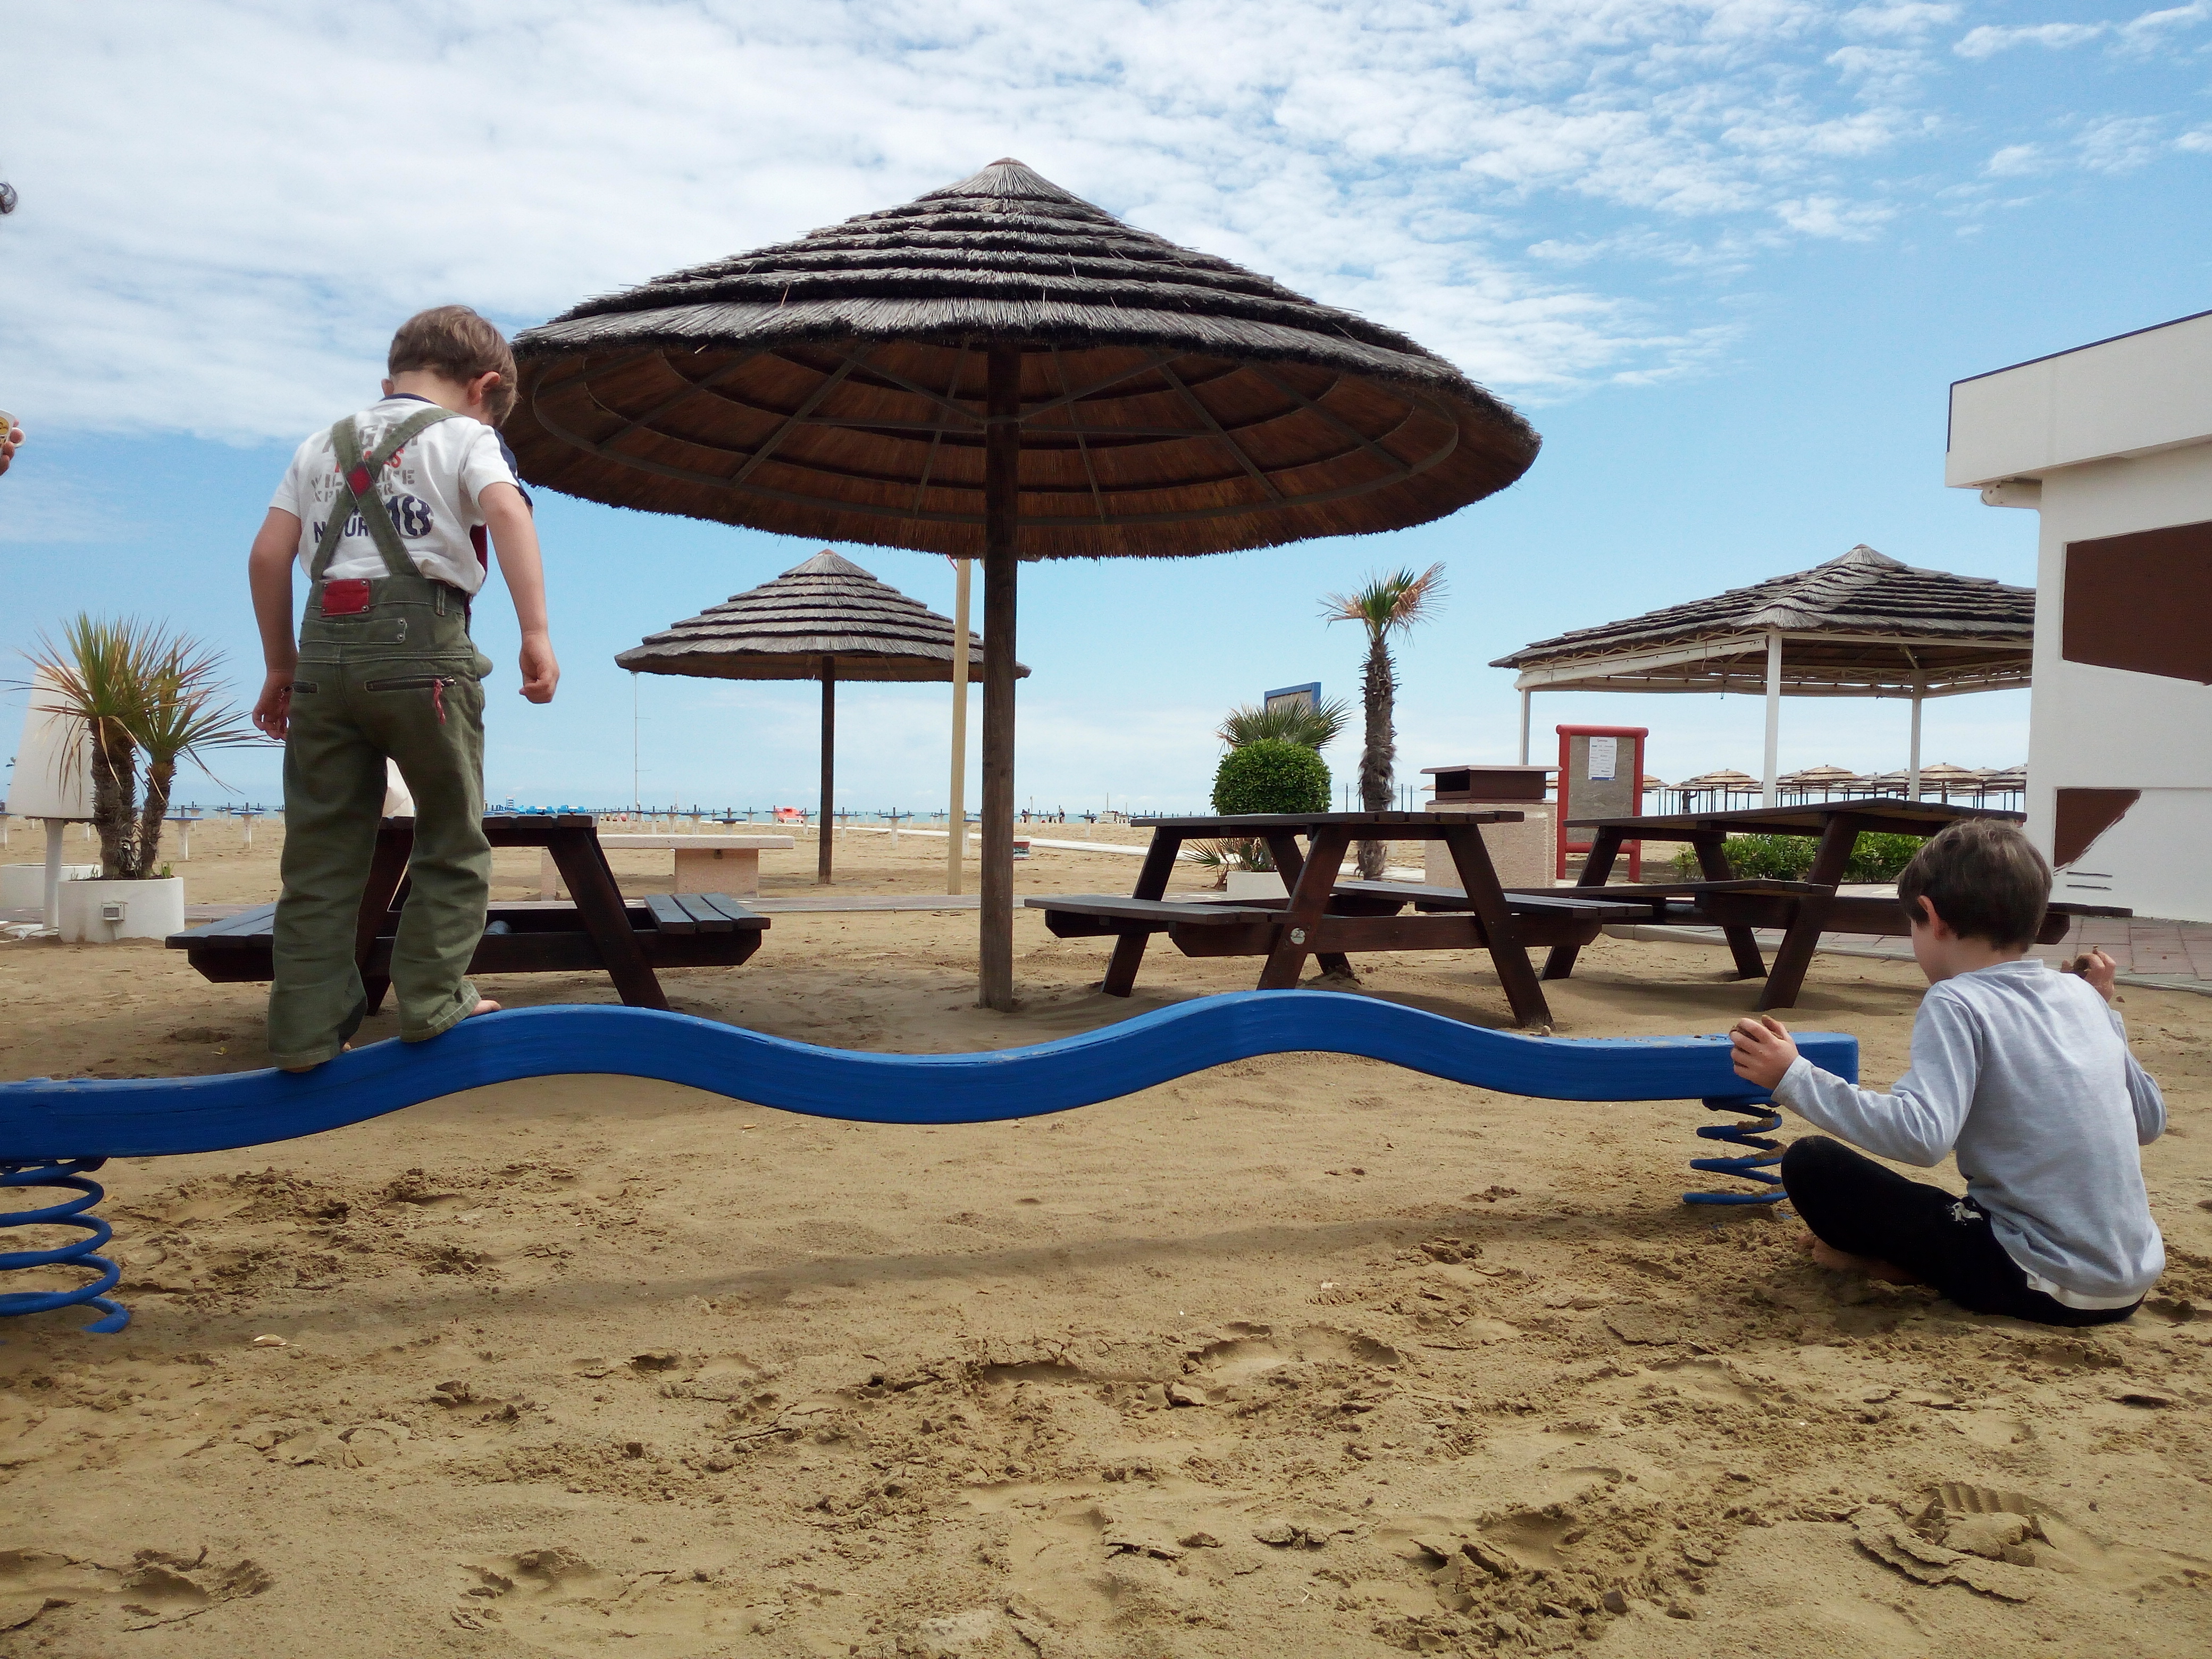 Rimini spiaggia fuori stagione, con giochi per bambini e caffé